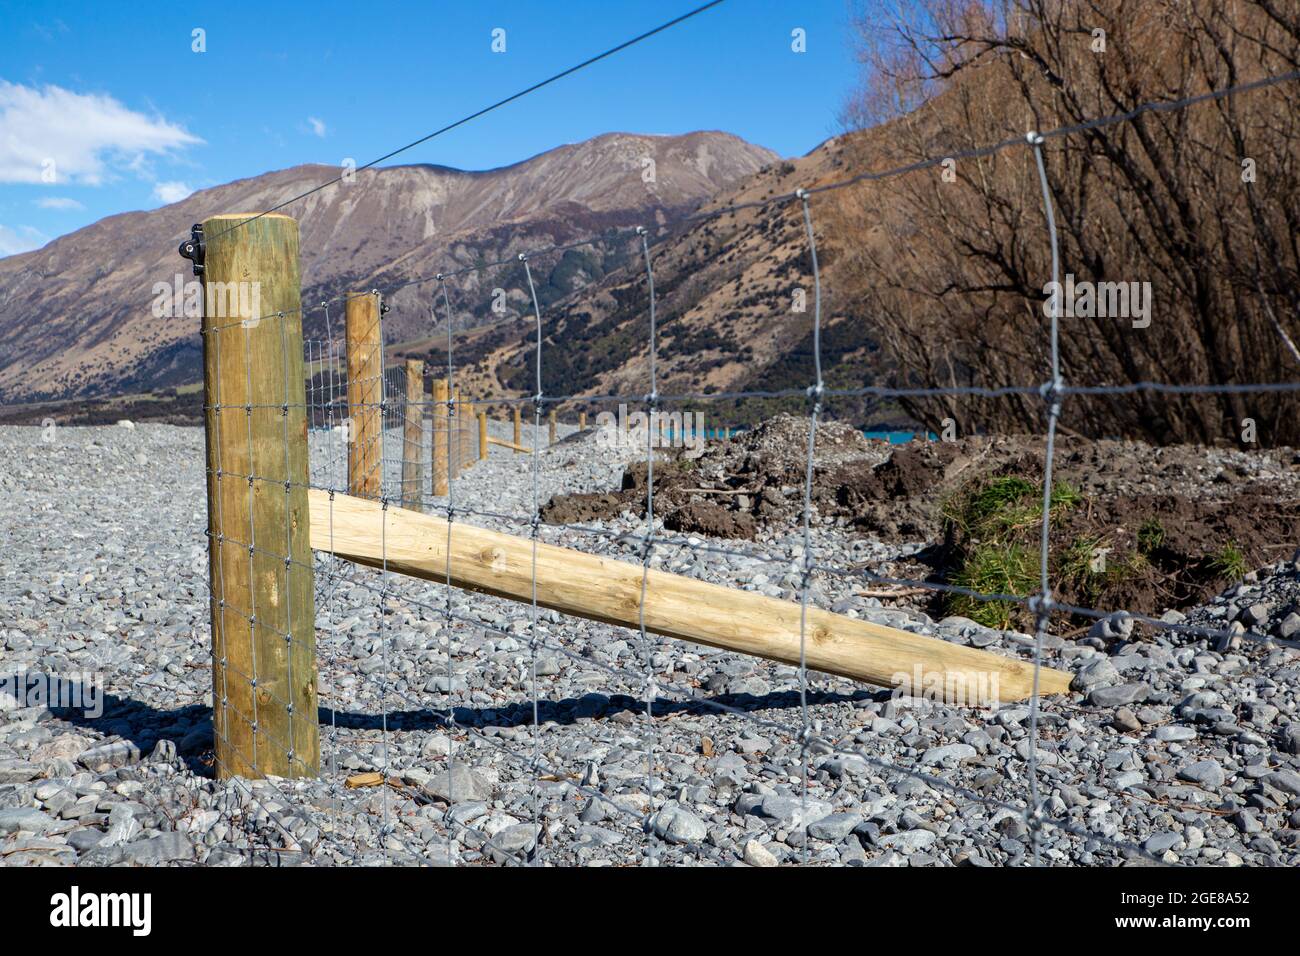 Nuovo palo e recinzione di rete che divide il confine della fattoria dal letto del fiume nel paese alto, Canterbury, Nuova Zelanda Foto Stock